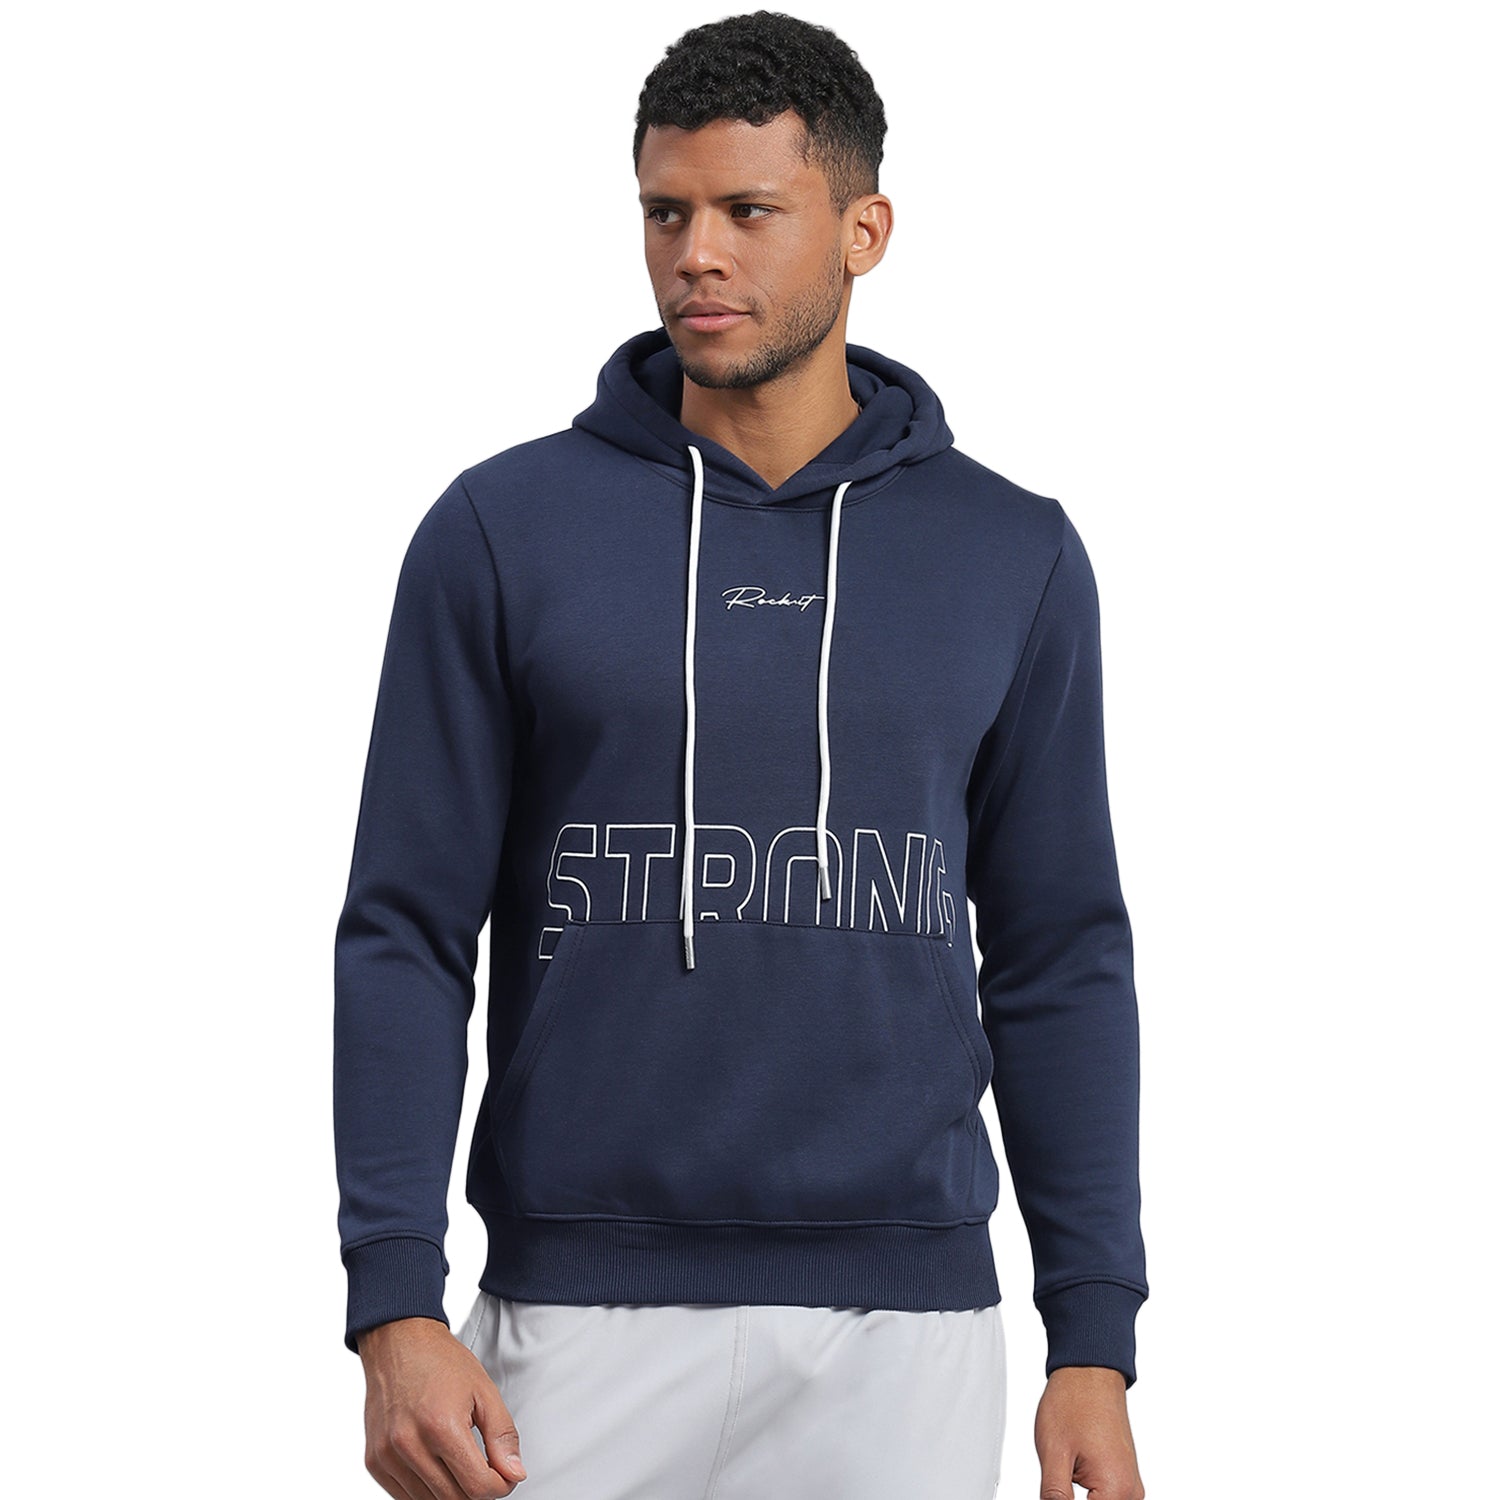 Men Navy Blue Printed Hooded Full Sleeve Sweatshirt